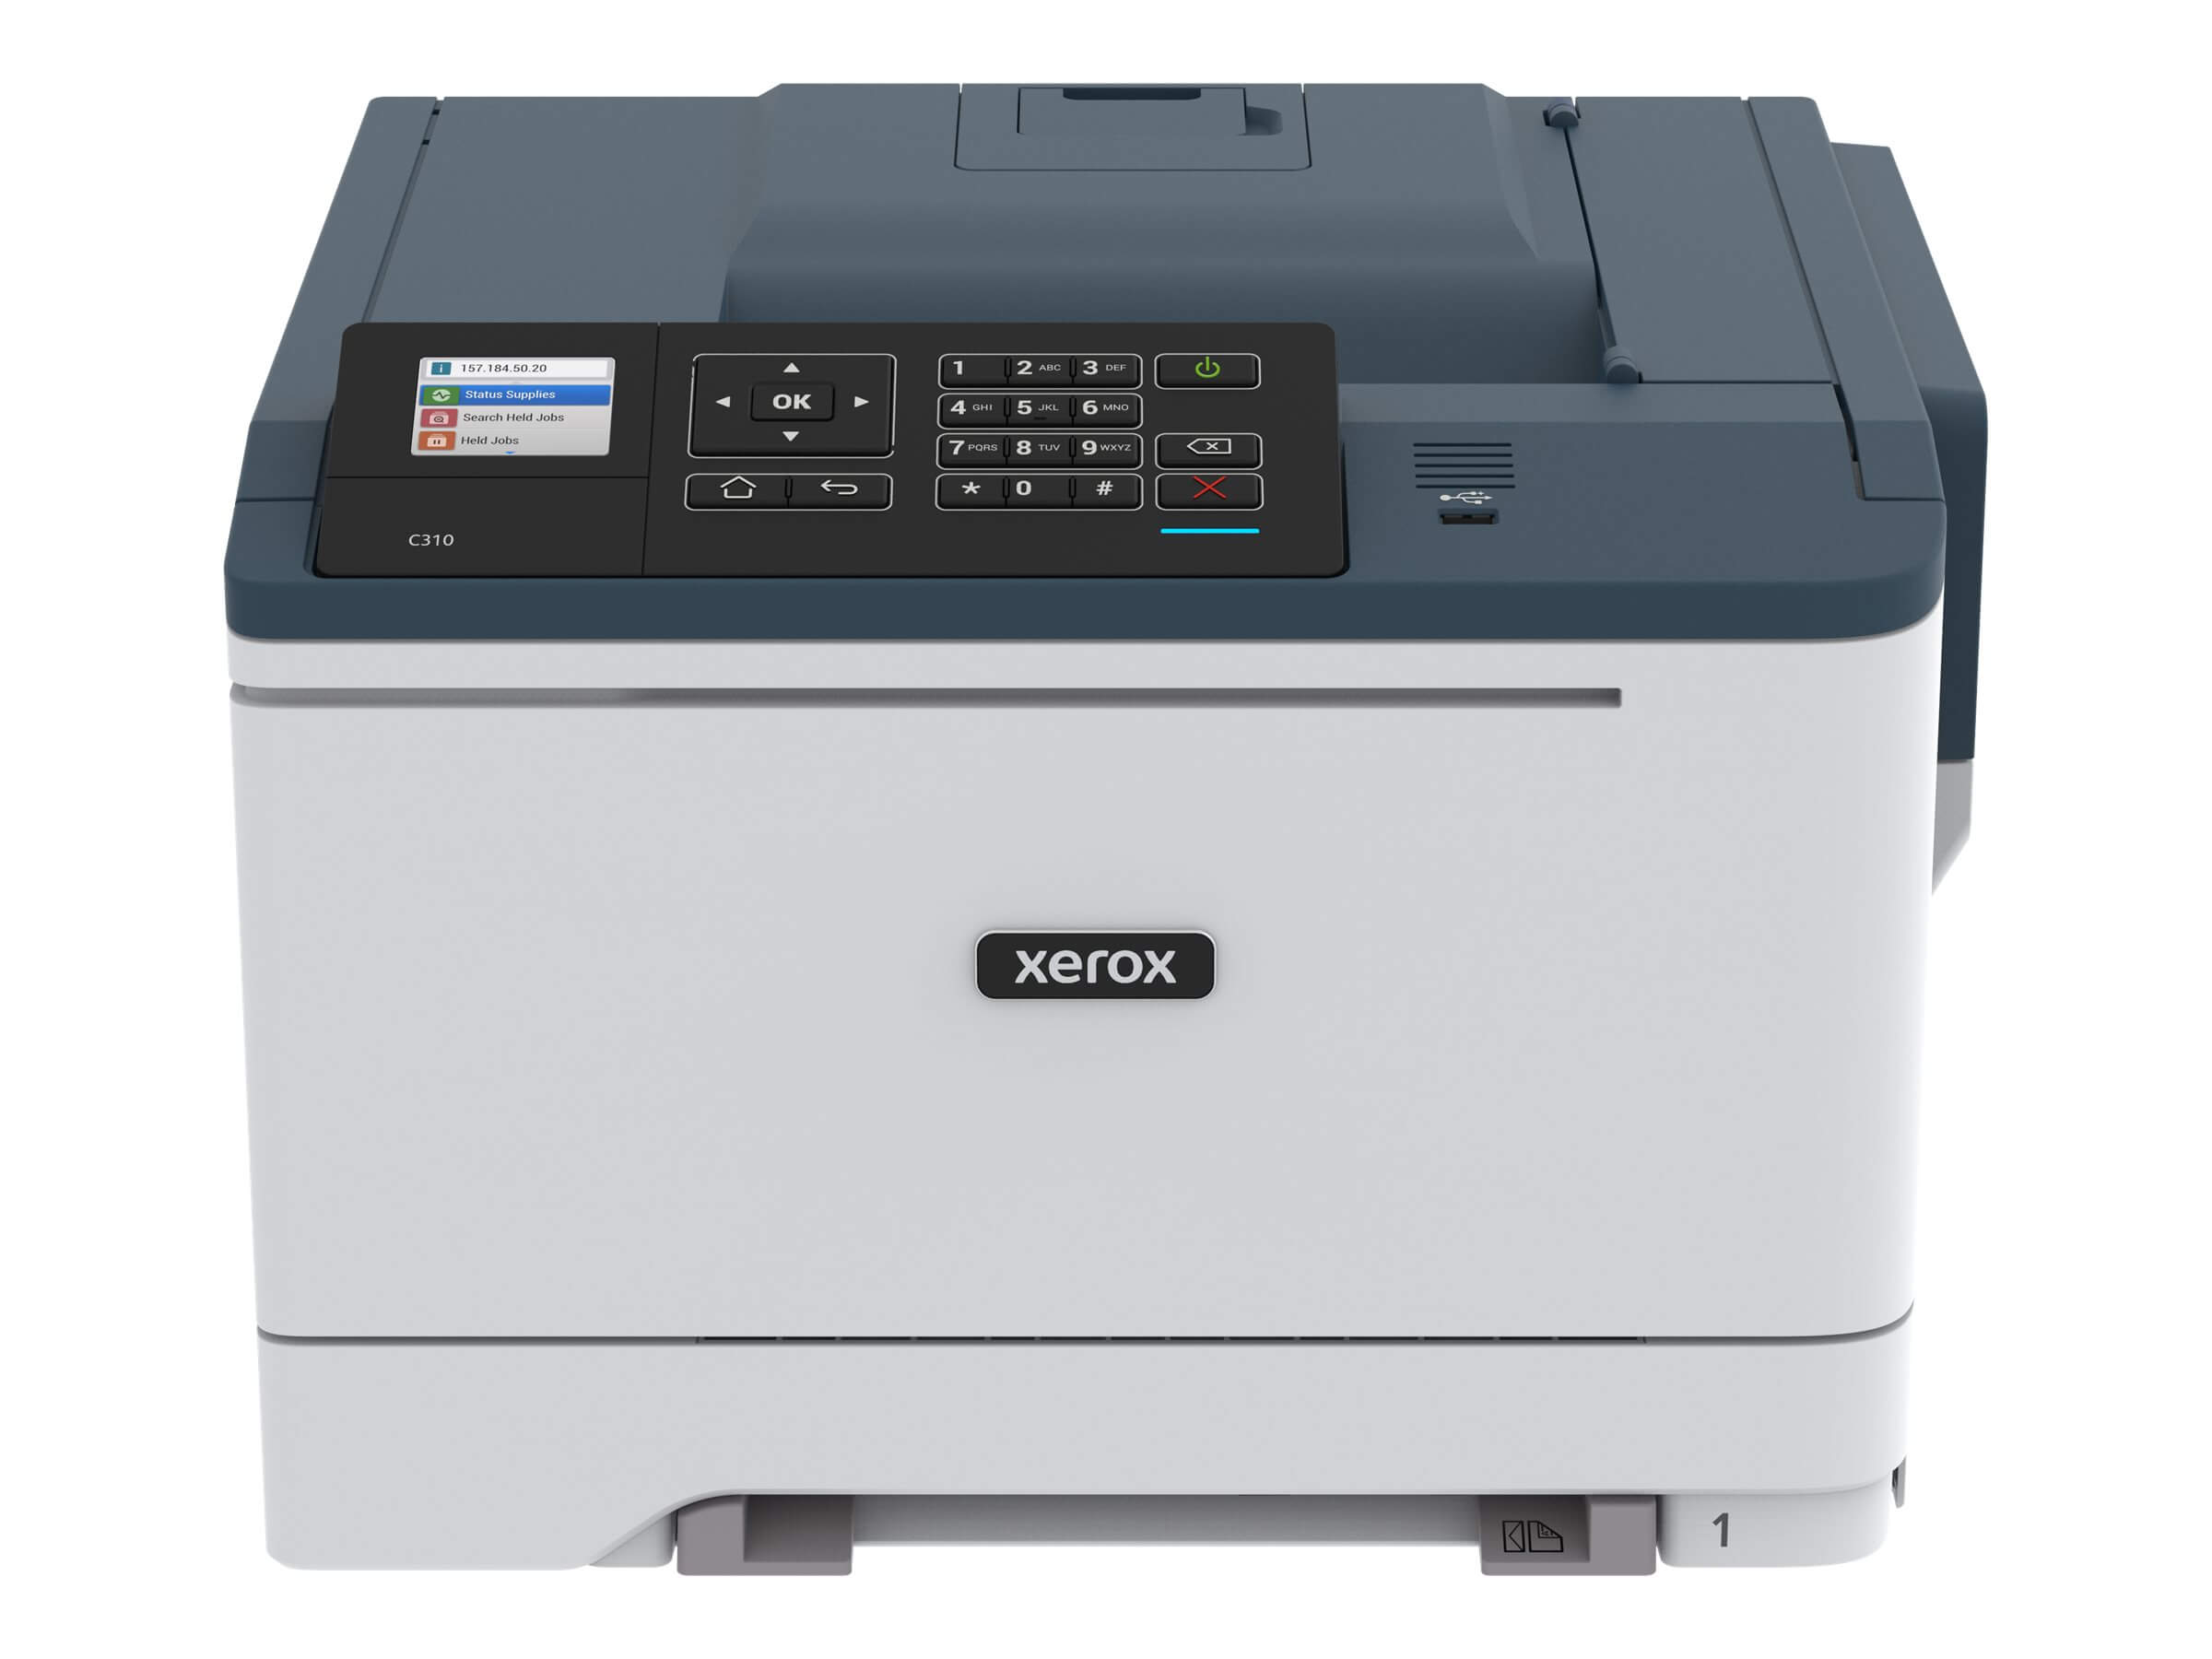 Xerox C310 DNI imprimante laser couleur Wifi recto-verso réseau